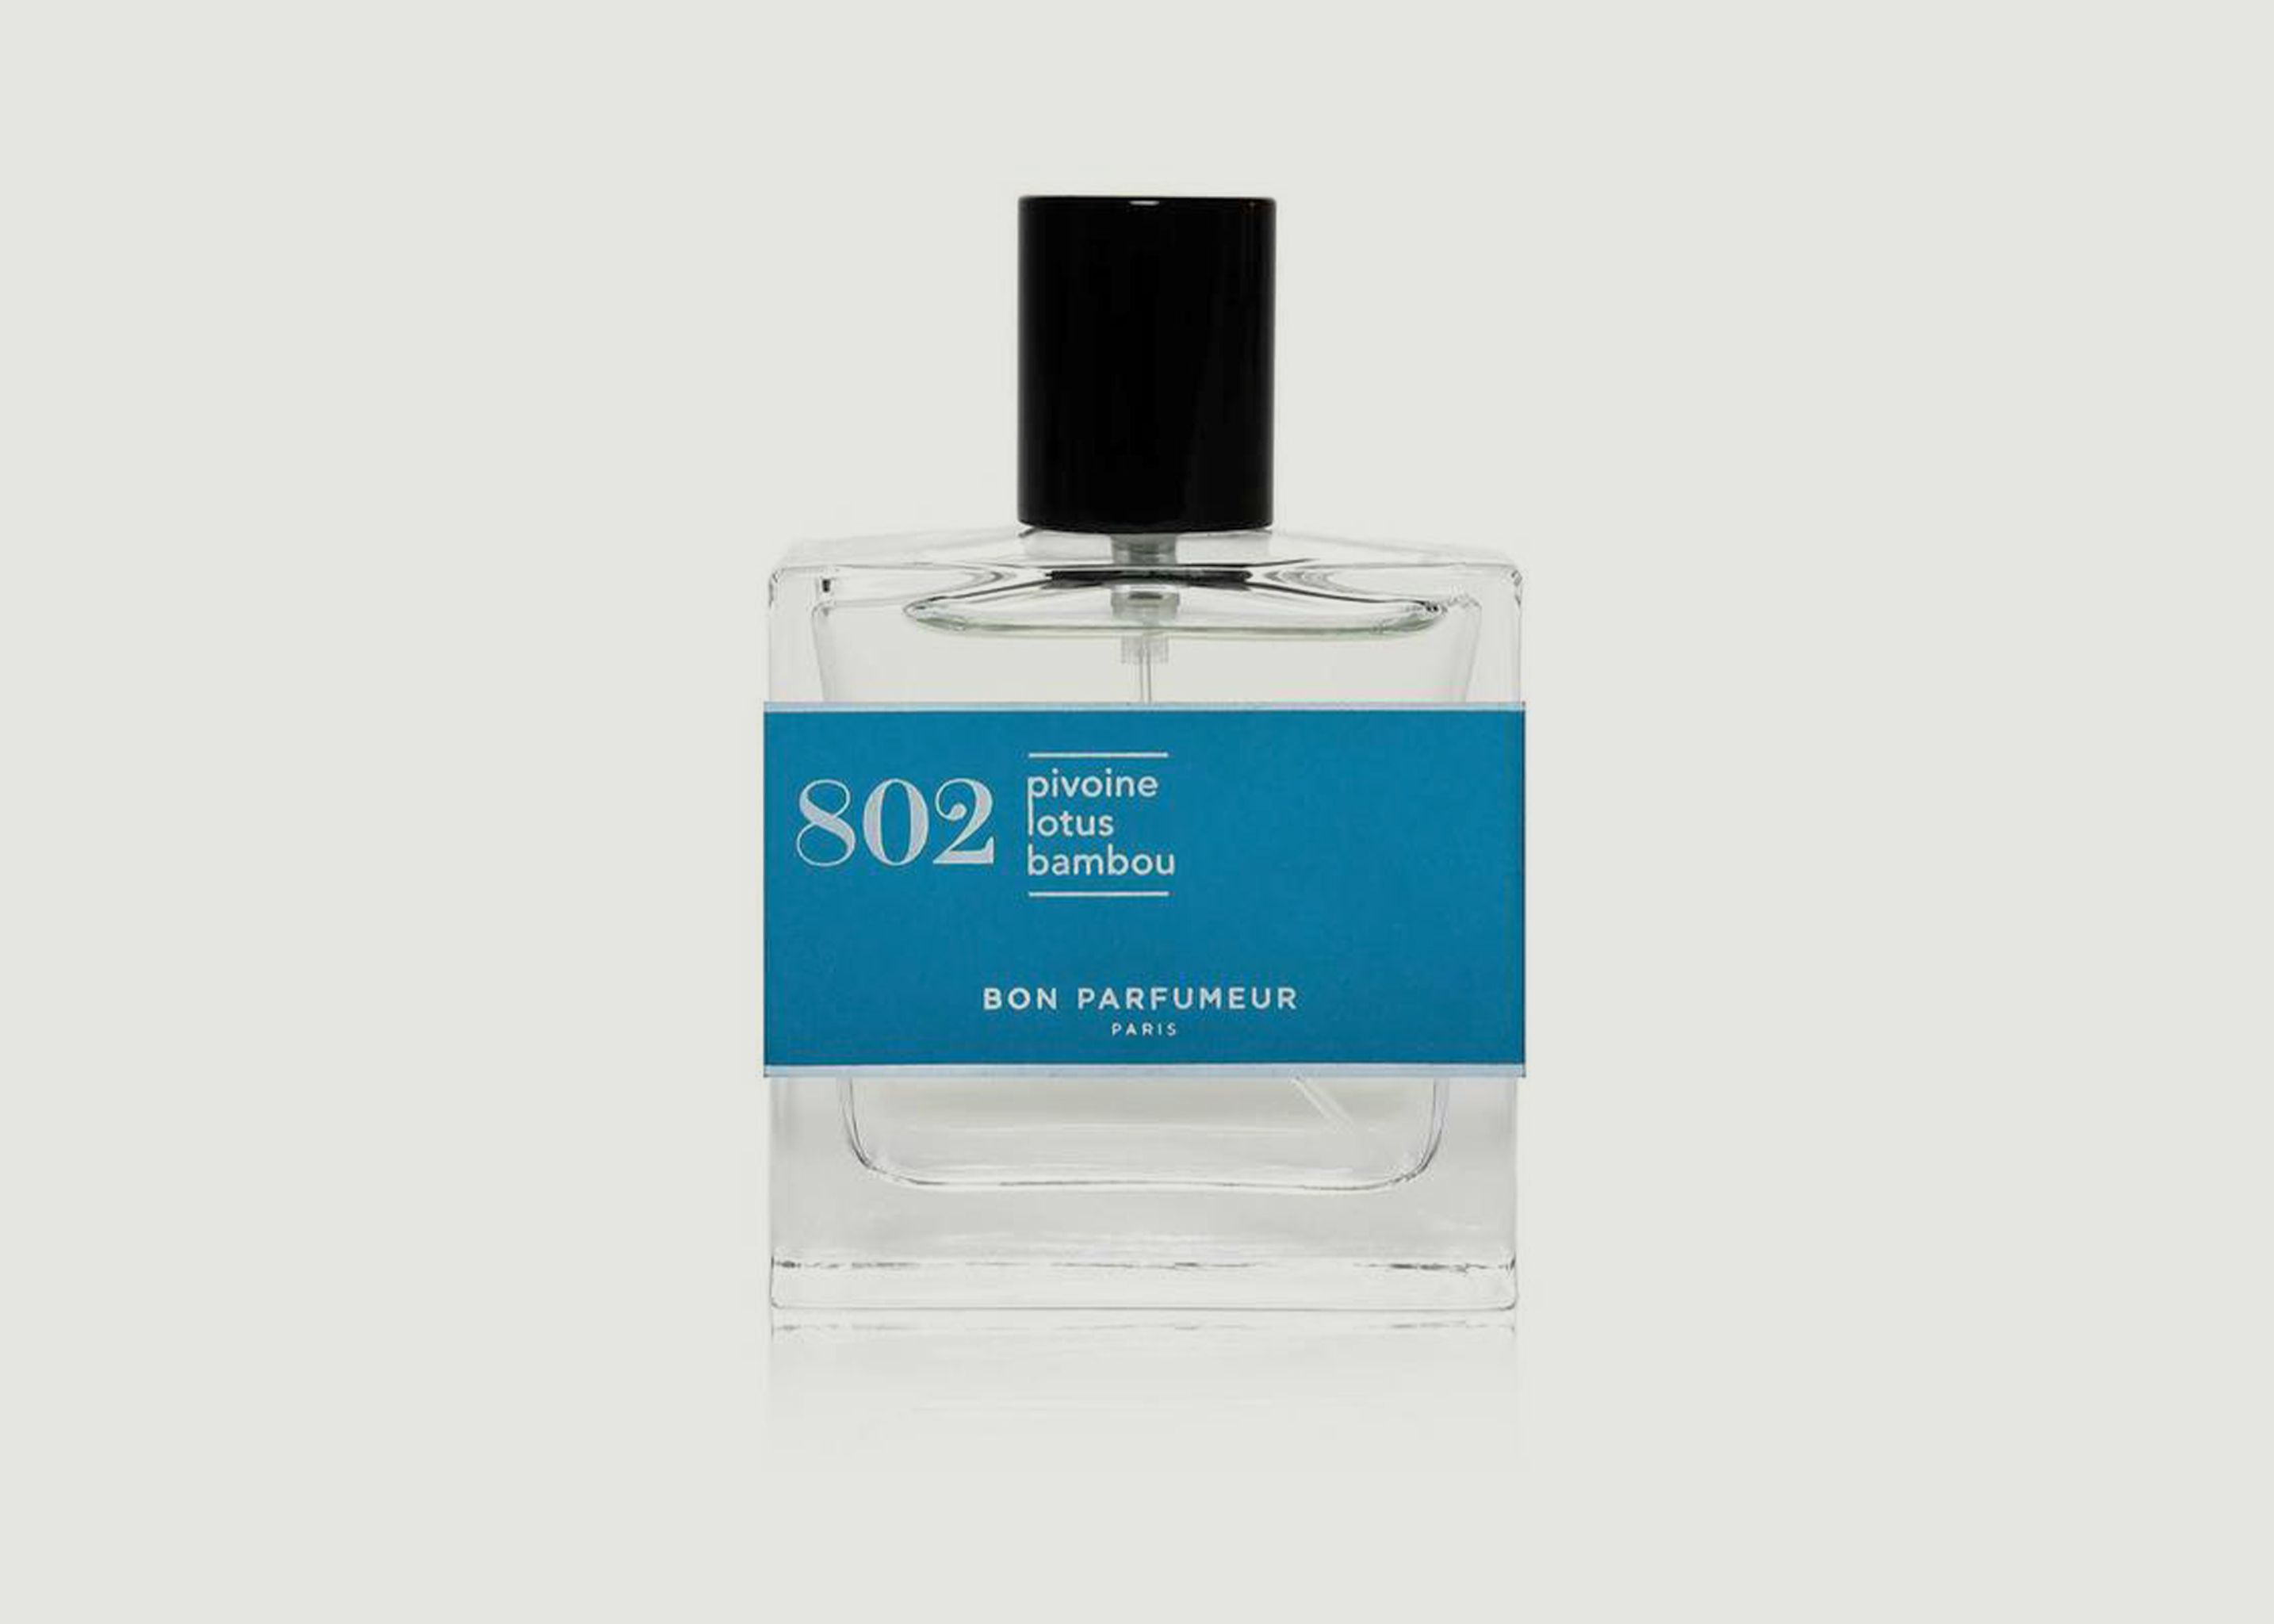 Eau de Parfum 802, Pfingstrose, Lotus, Bambus - Bon Parfumeur